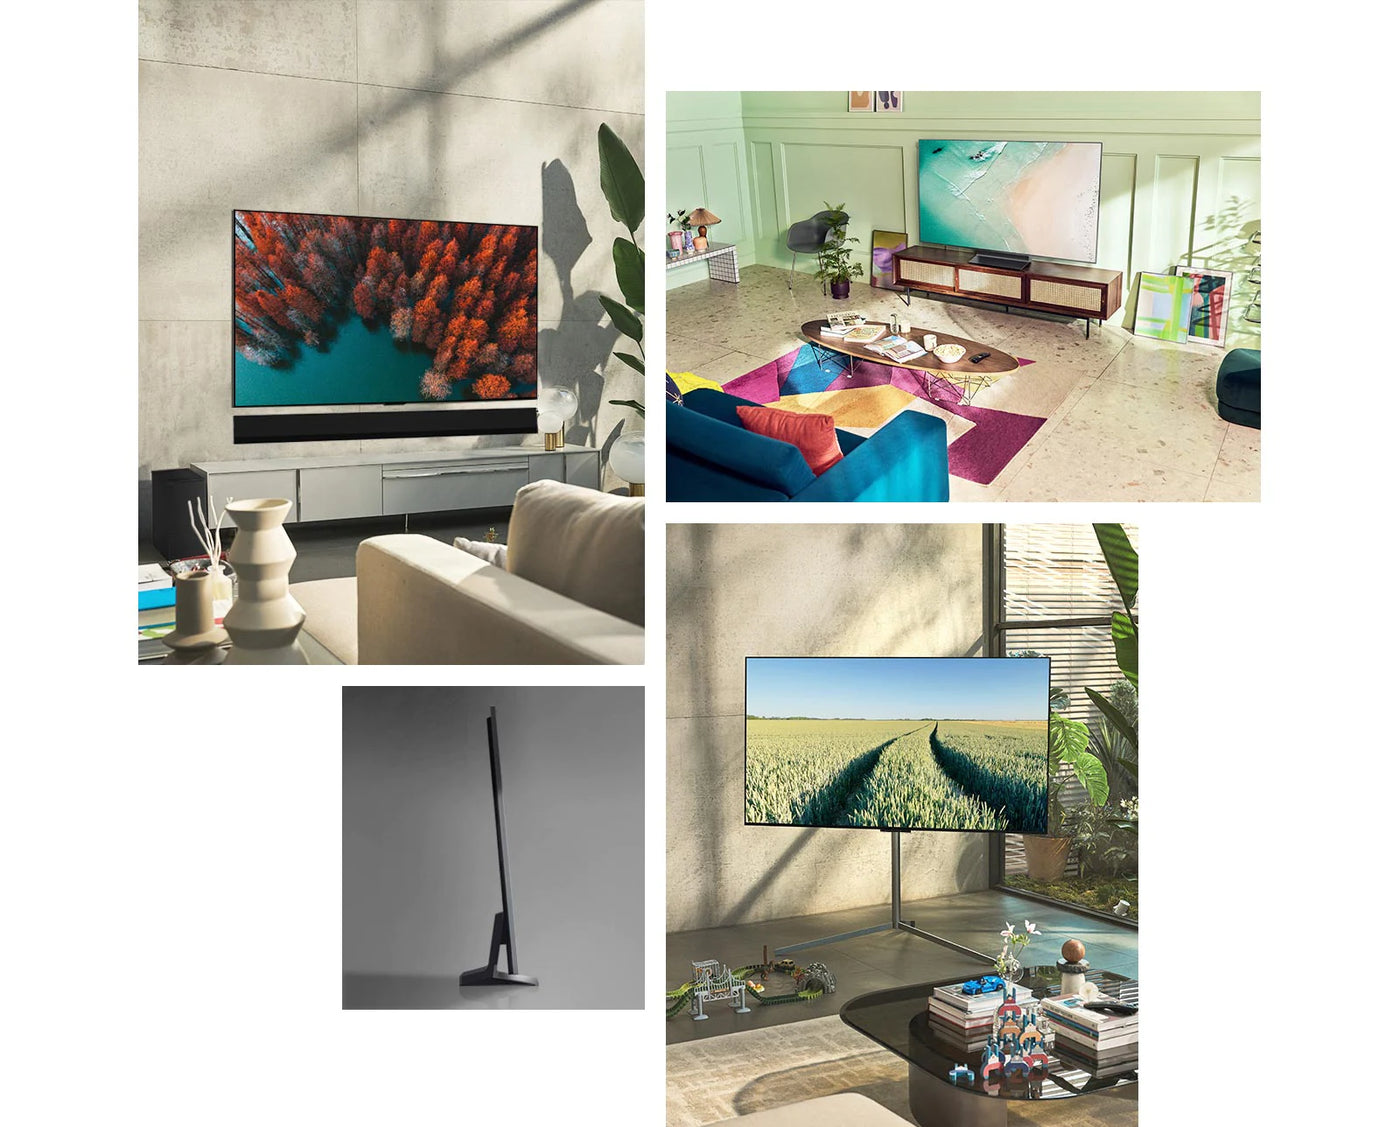 LG G2 OLED Televíziók elhelyezve otthoni környezetben.